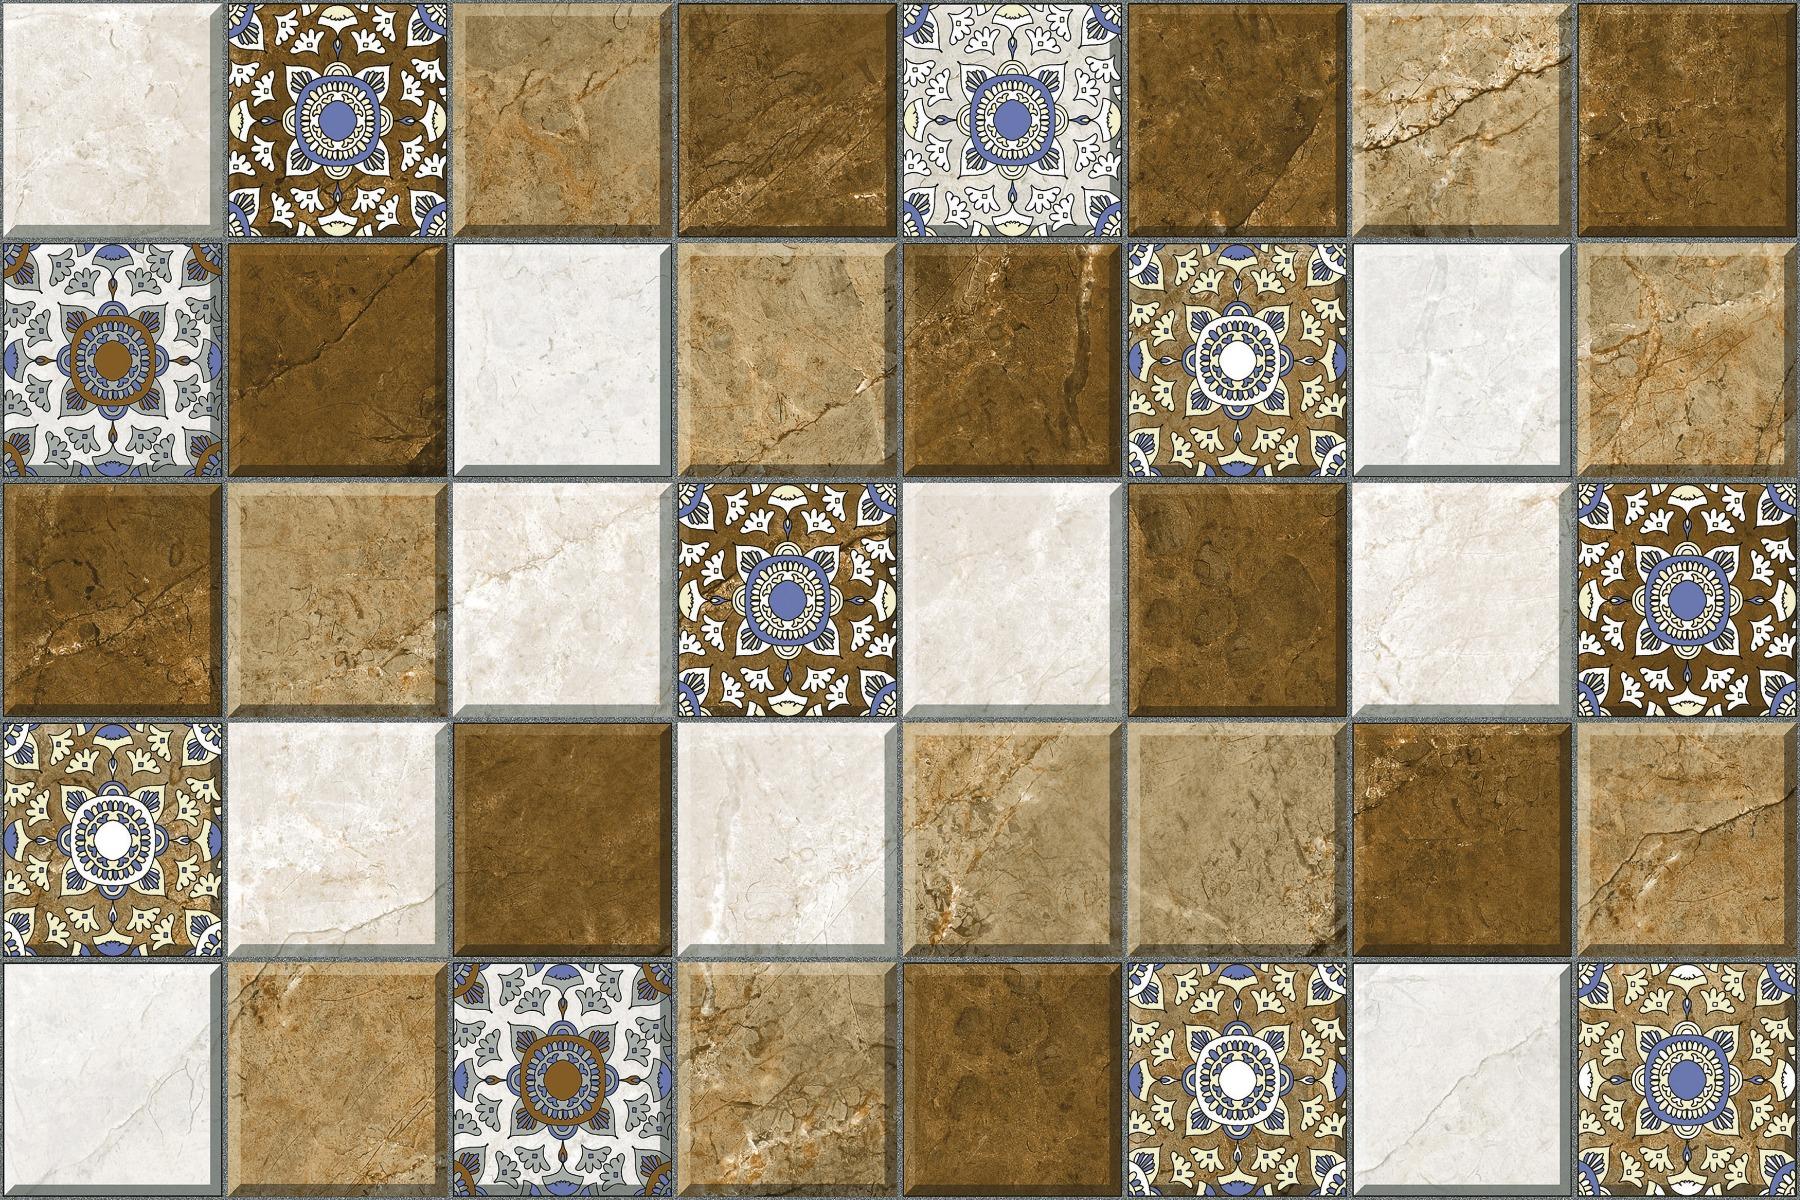 Estilo Tiles Collection for Bathroom Tiles, Living Room Tiles, Kitchen Tiles, Bedroom Tiles, Balcony Tiles